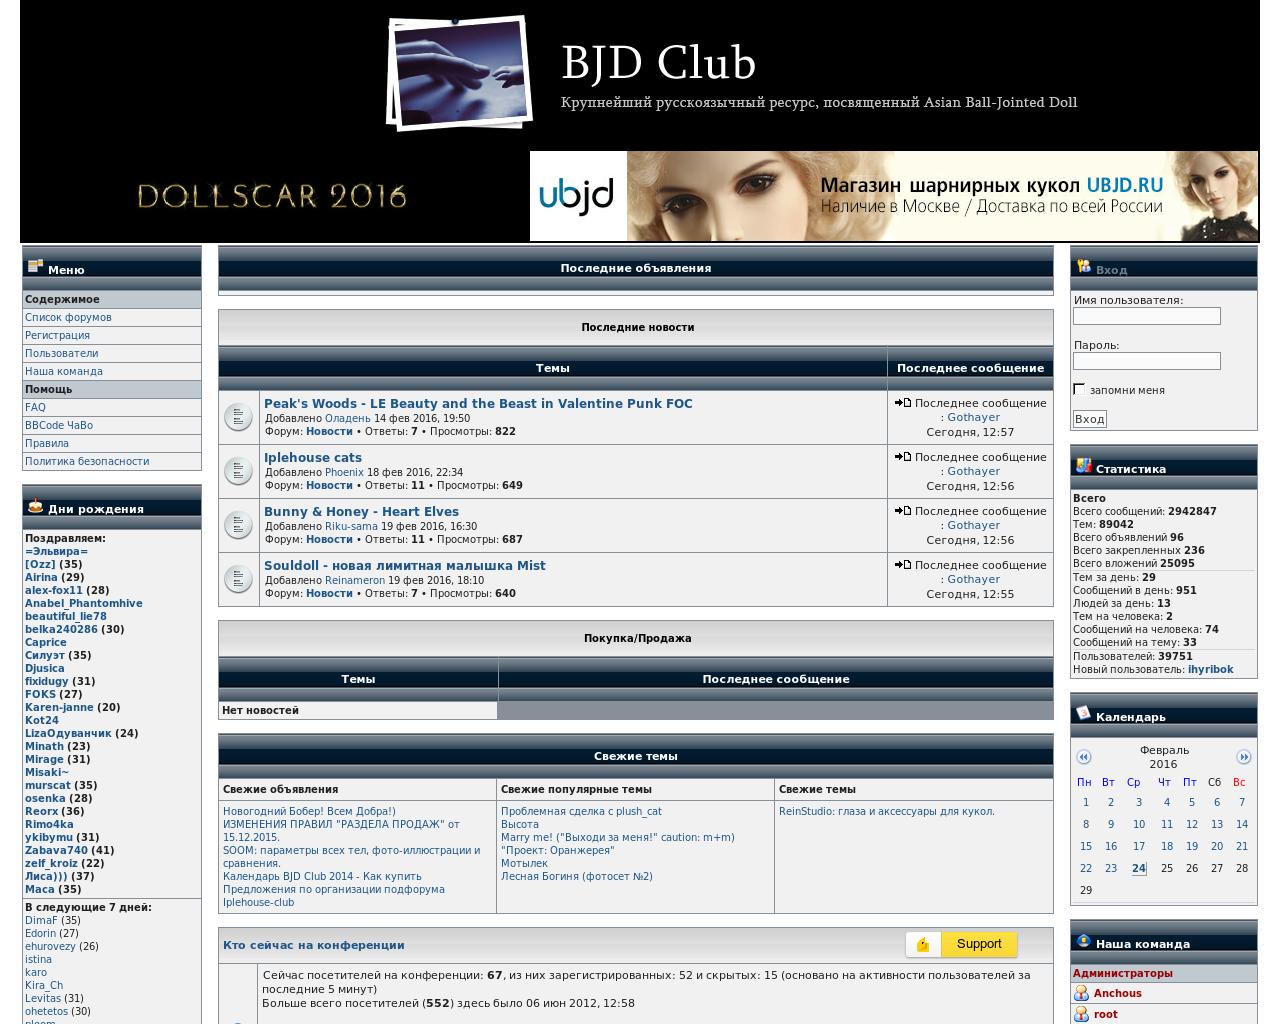 Изображение сайта bjdclub.ru в разрешении 1280x1024